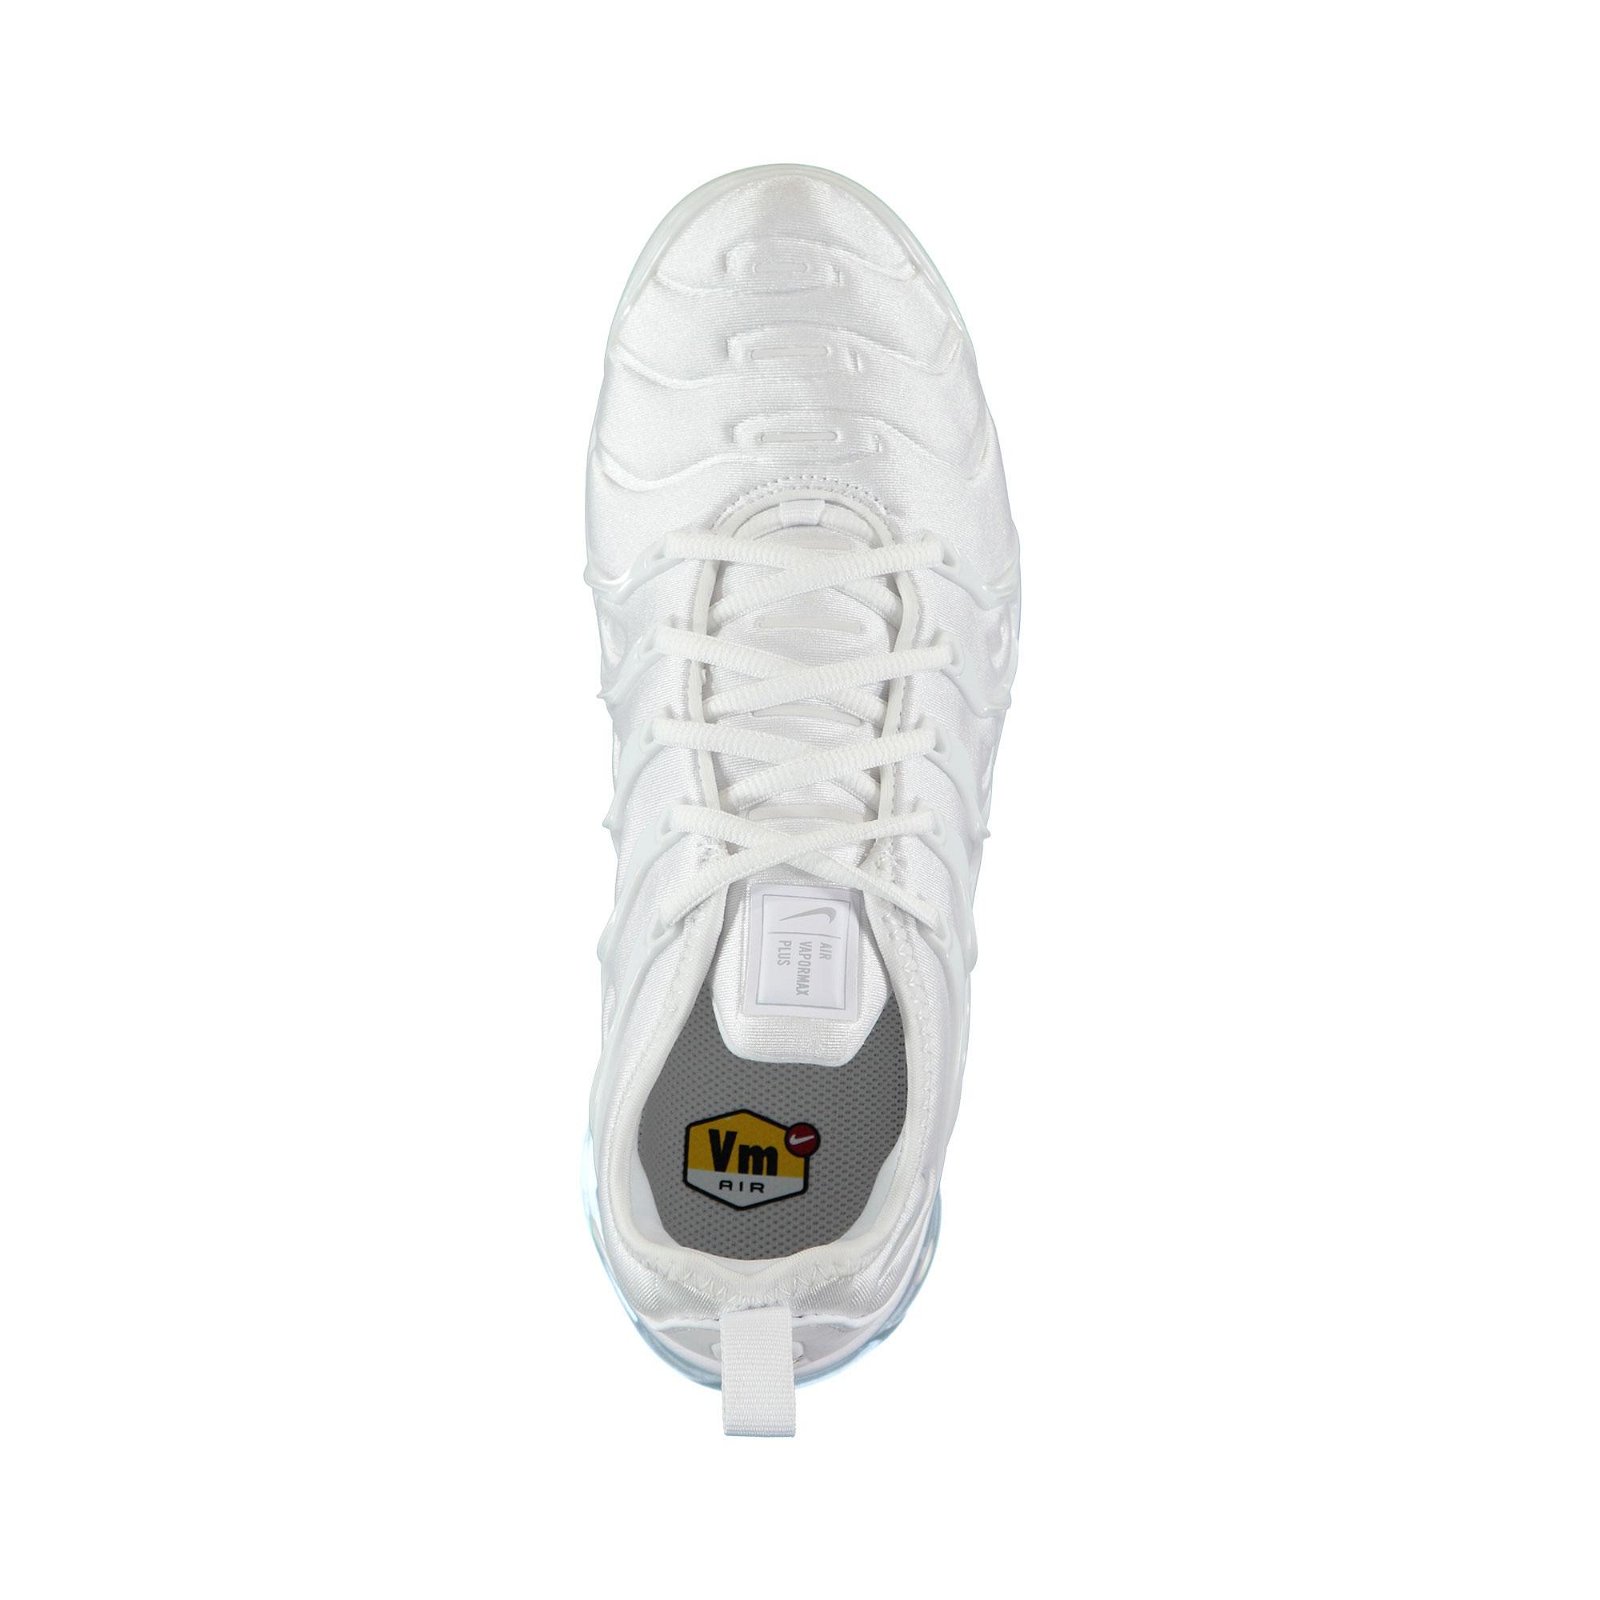  Nike Air Vapormax Plus Erkek Beyaz Spor Ayakkabı